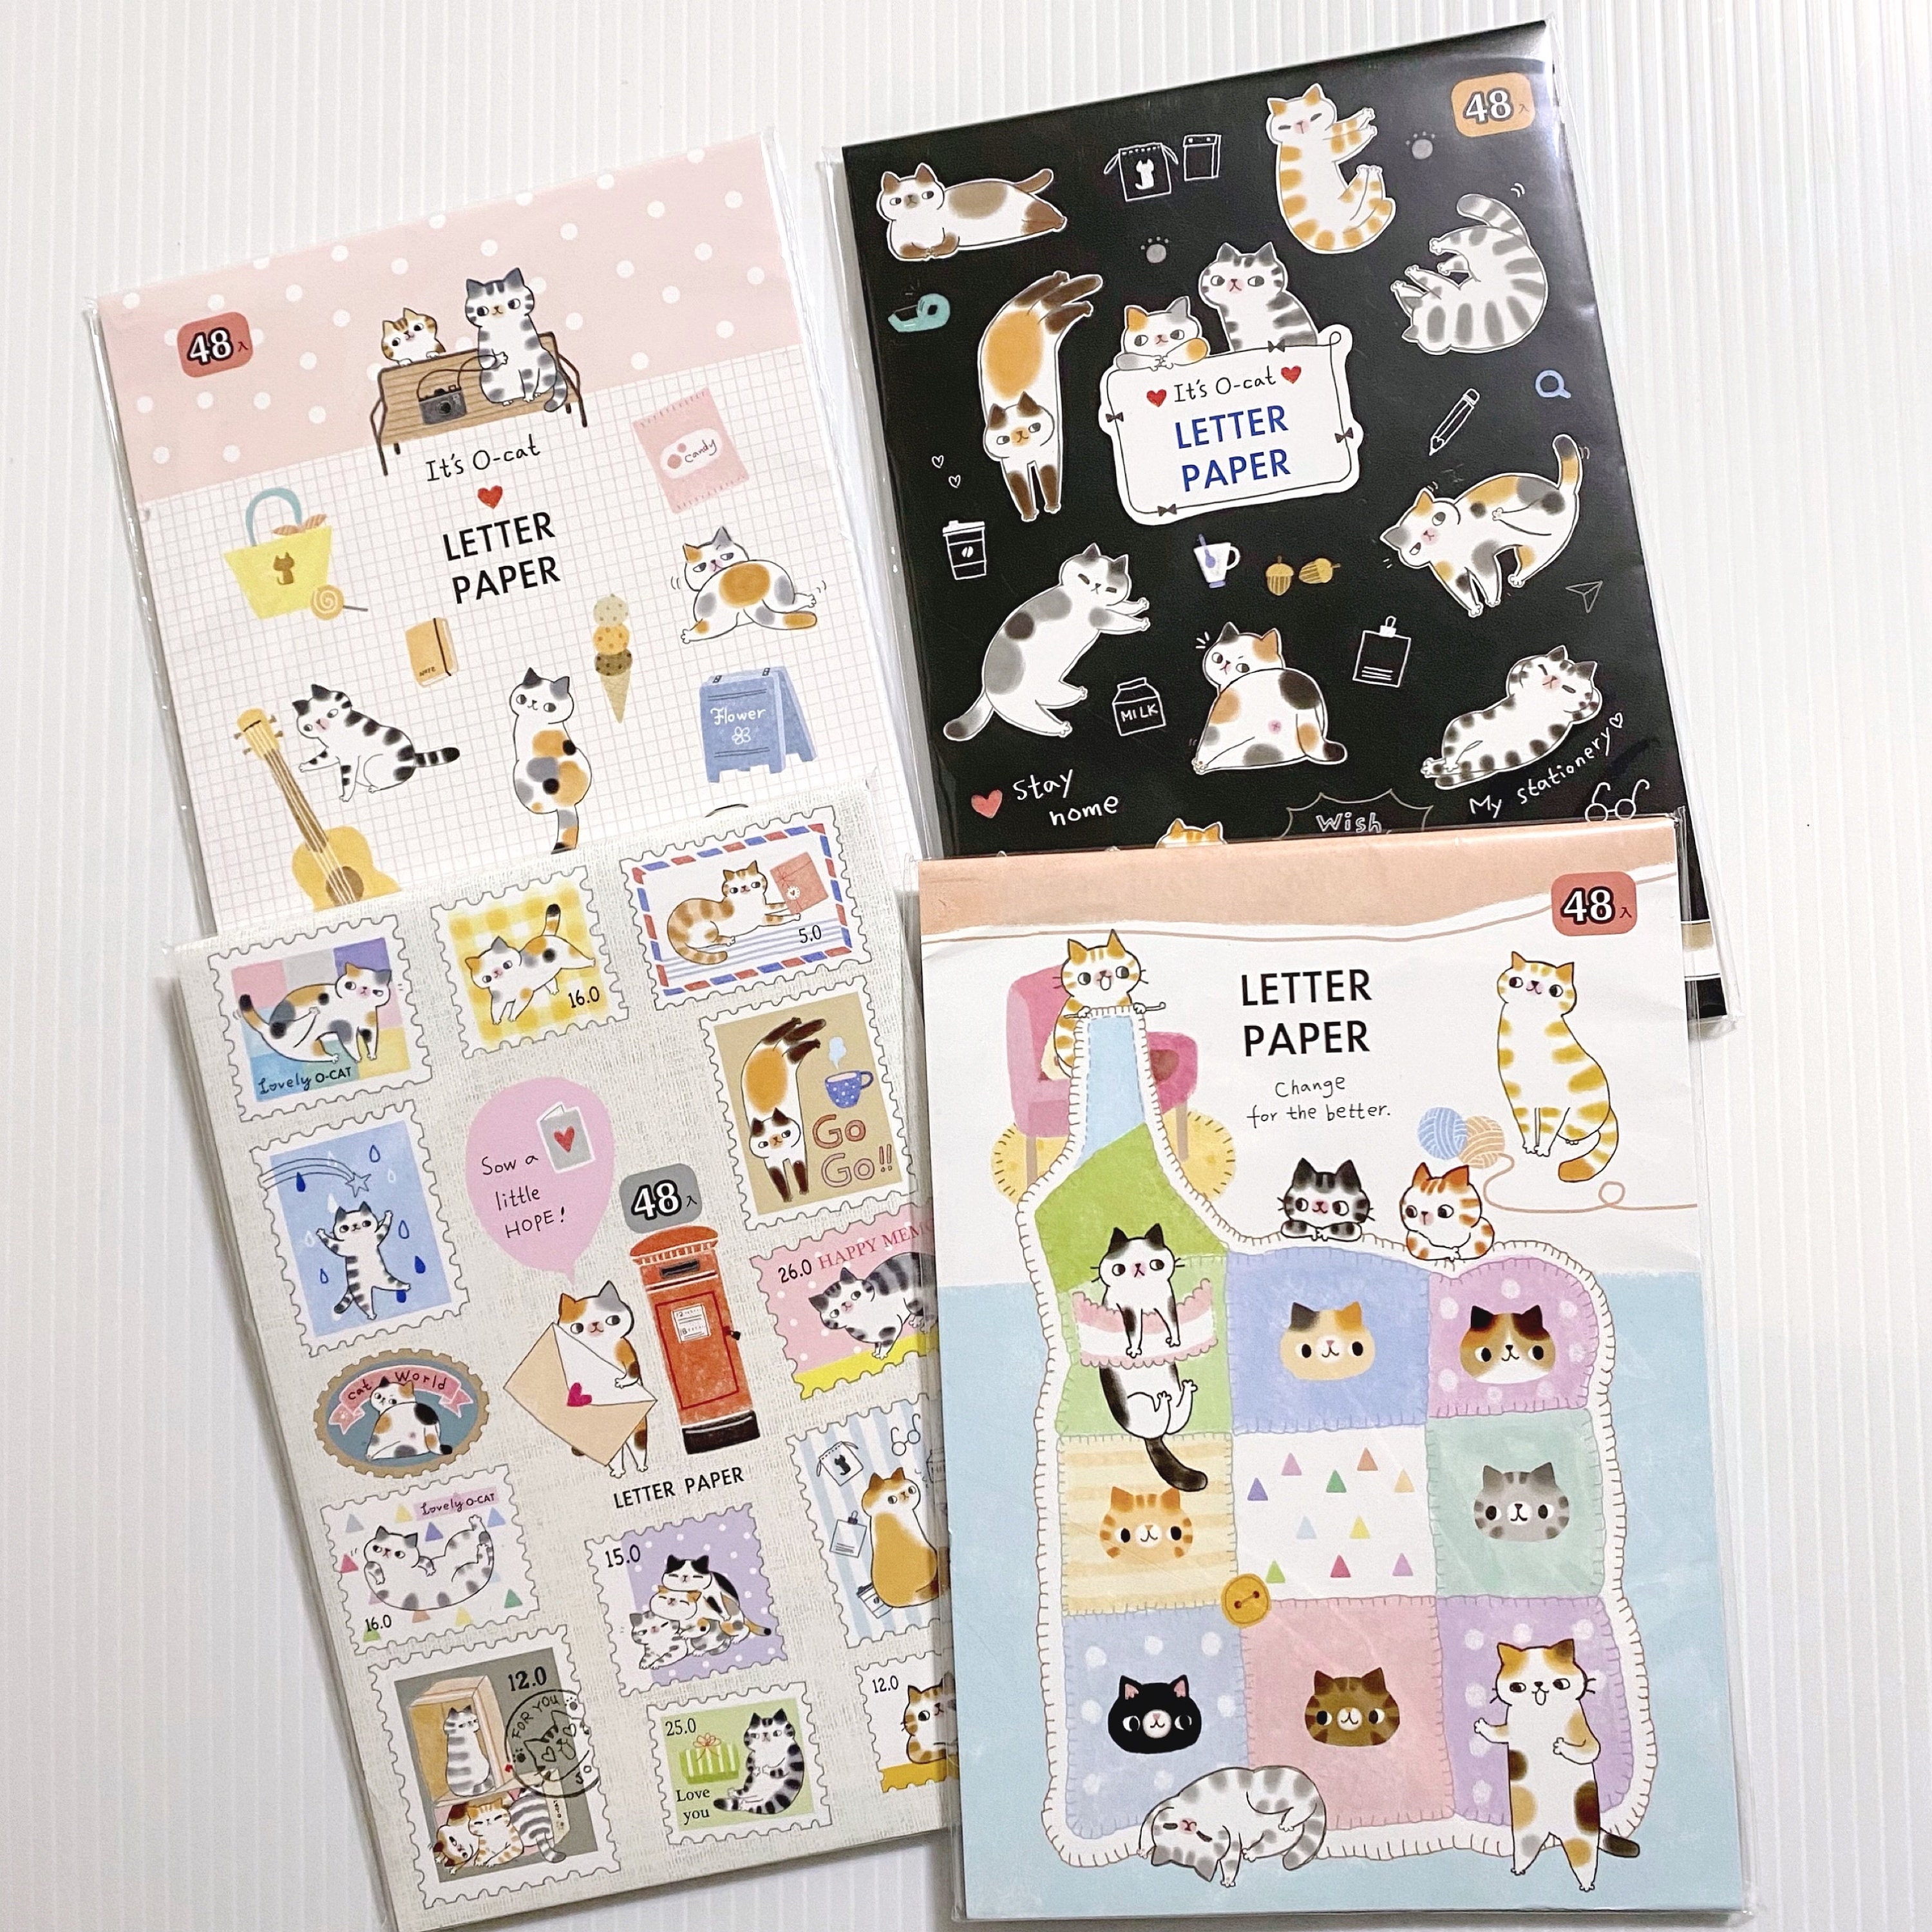 120pcs Cute Stationery Set, Cute Washi Tape Set, Journaling Paper